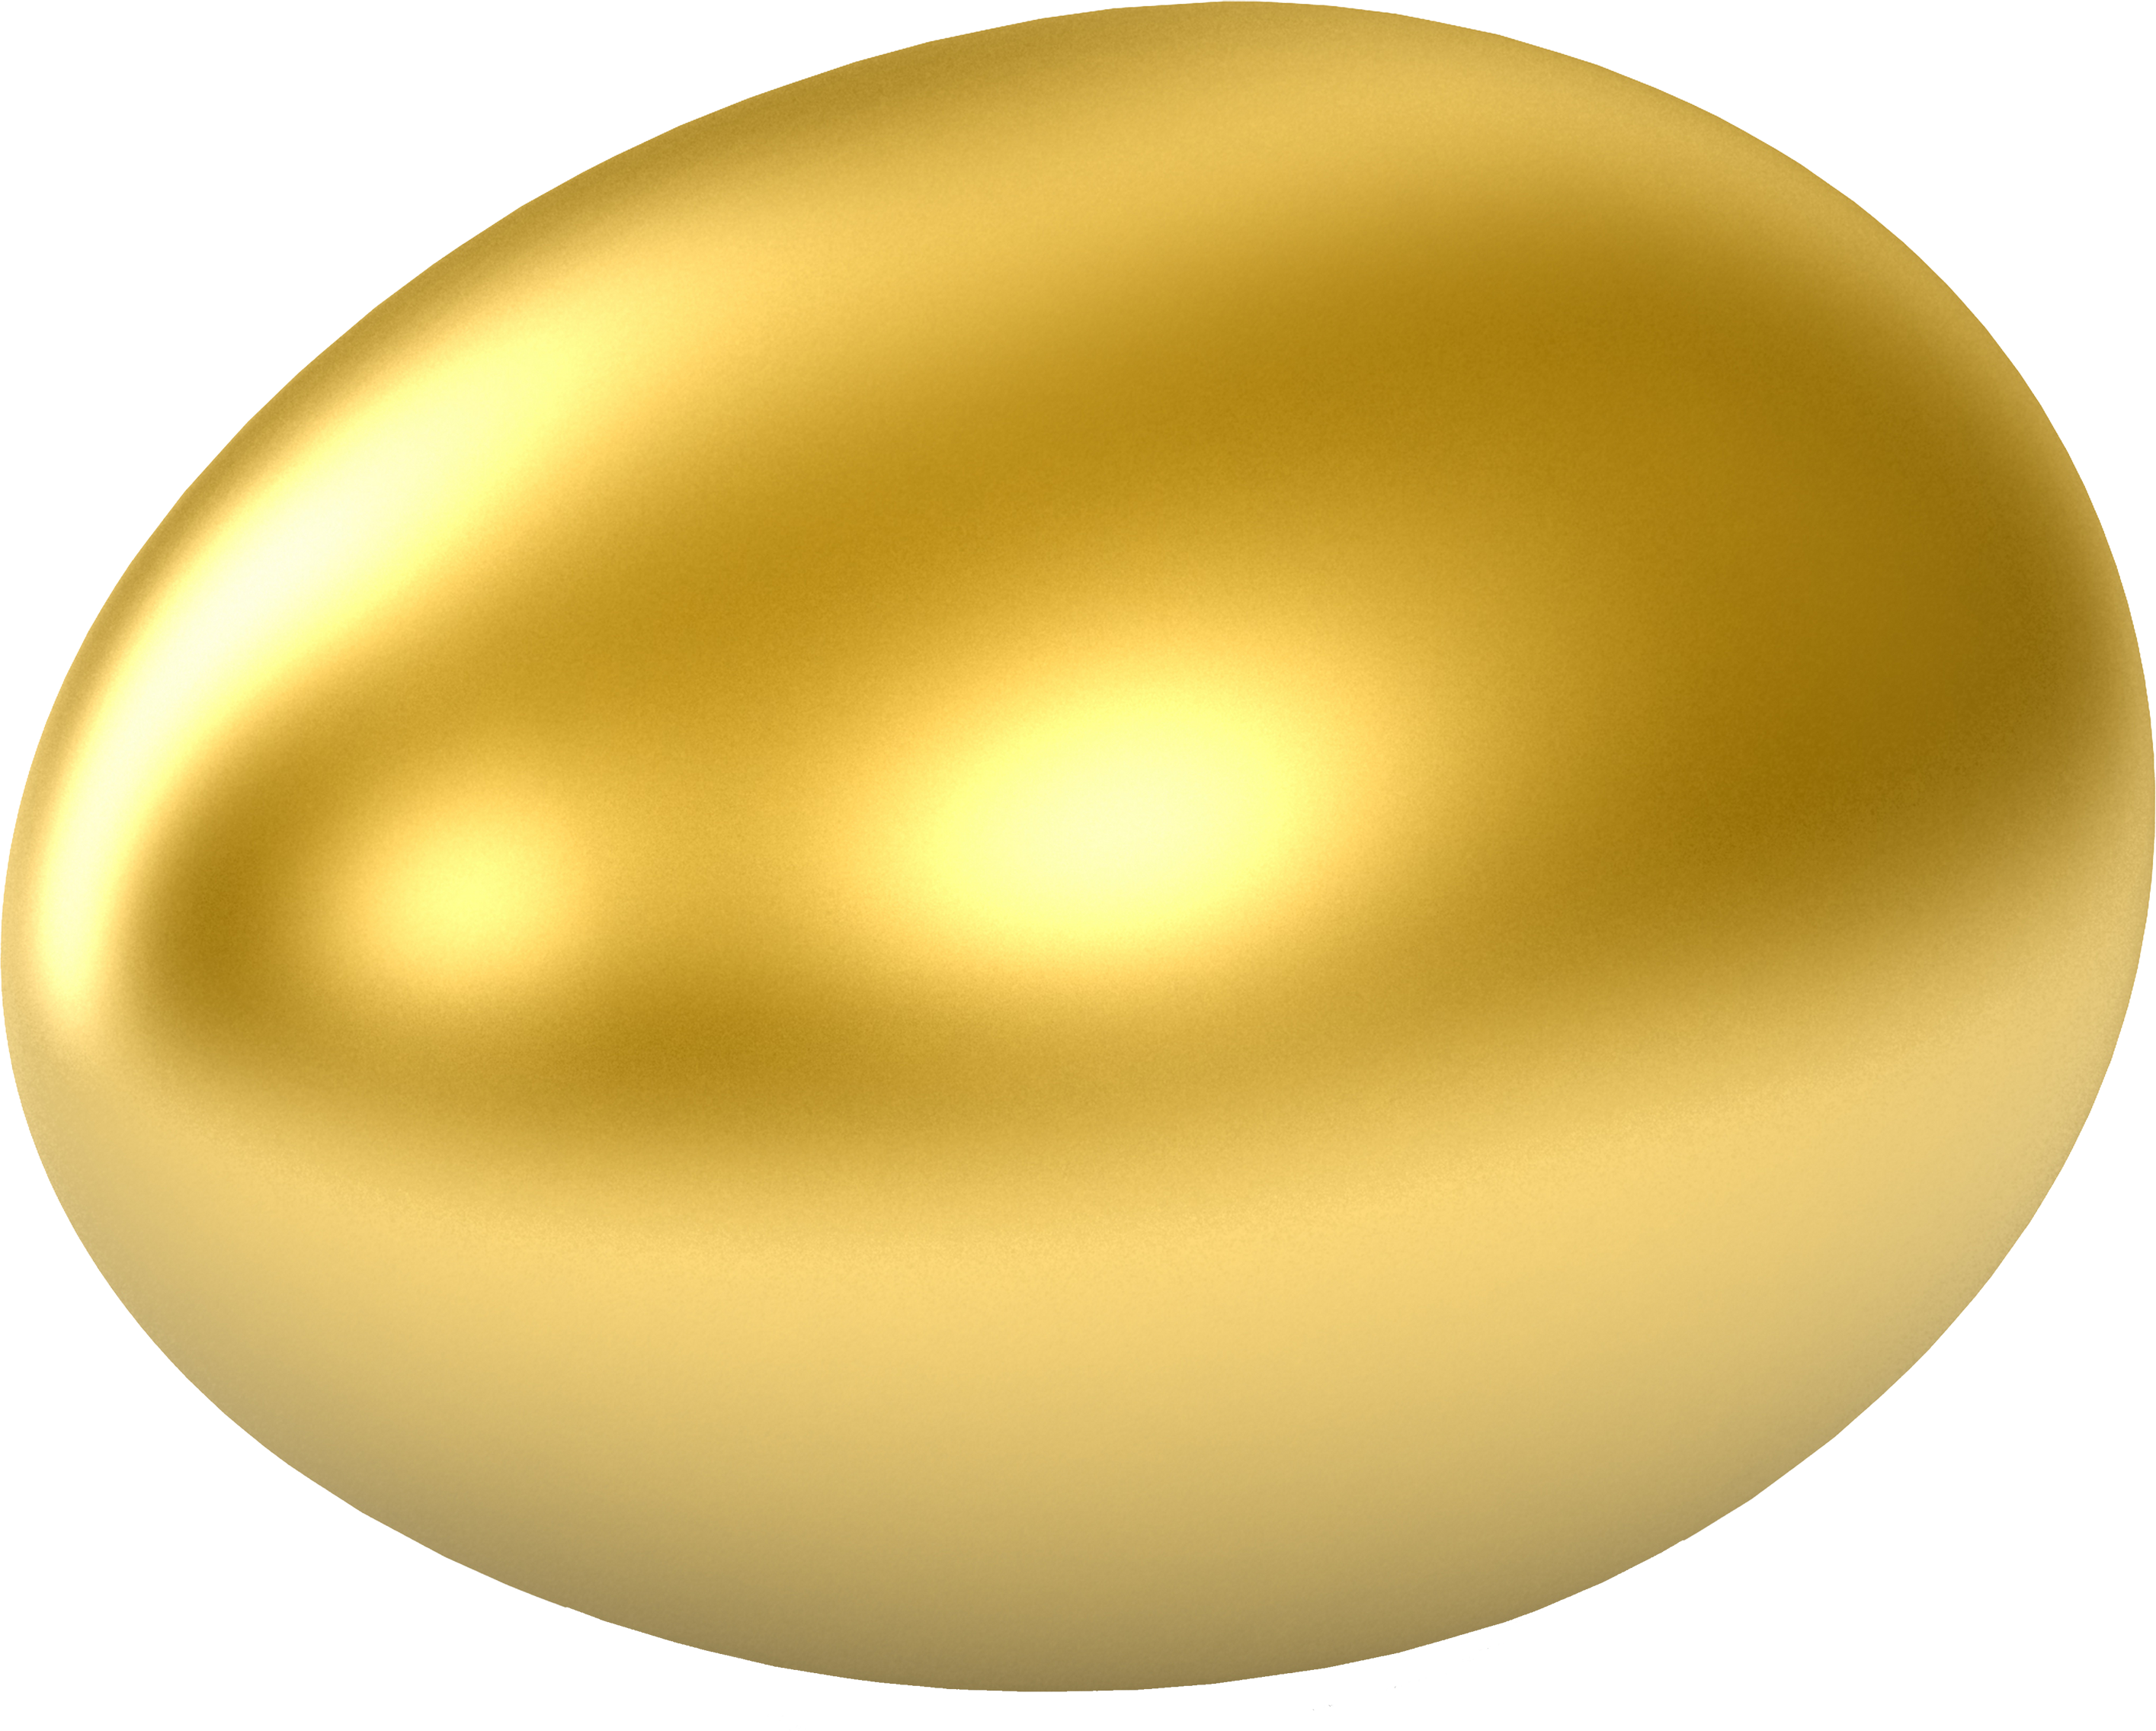 Egg Easter Gold Free Transparent Image HQ PNG Image